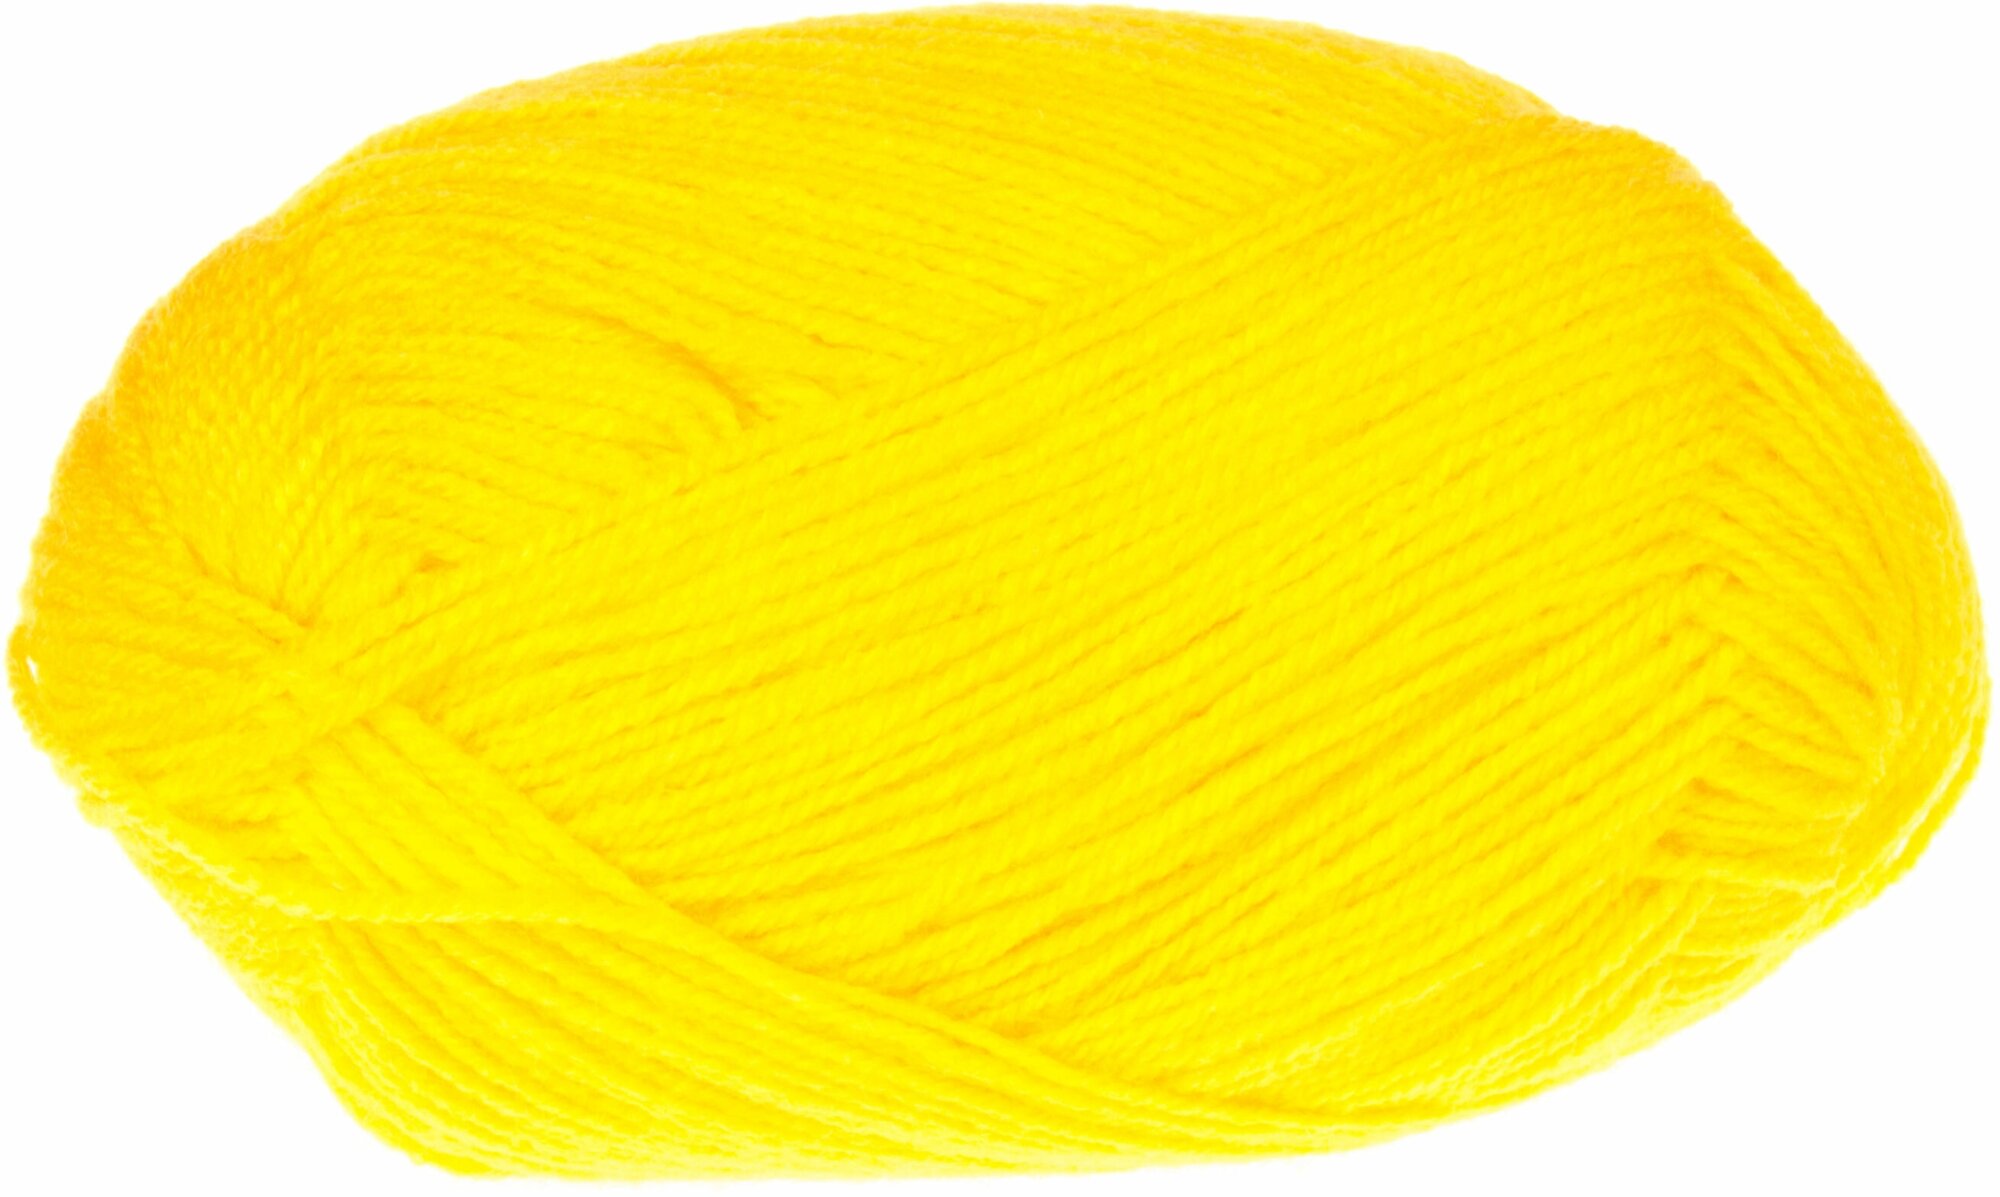 Пряжа Пехорка Детская новинка желток (12), 100%высокообъемный акрил, 200м, 50г, 5шт